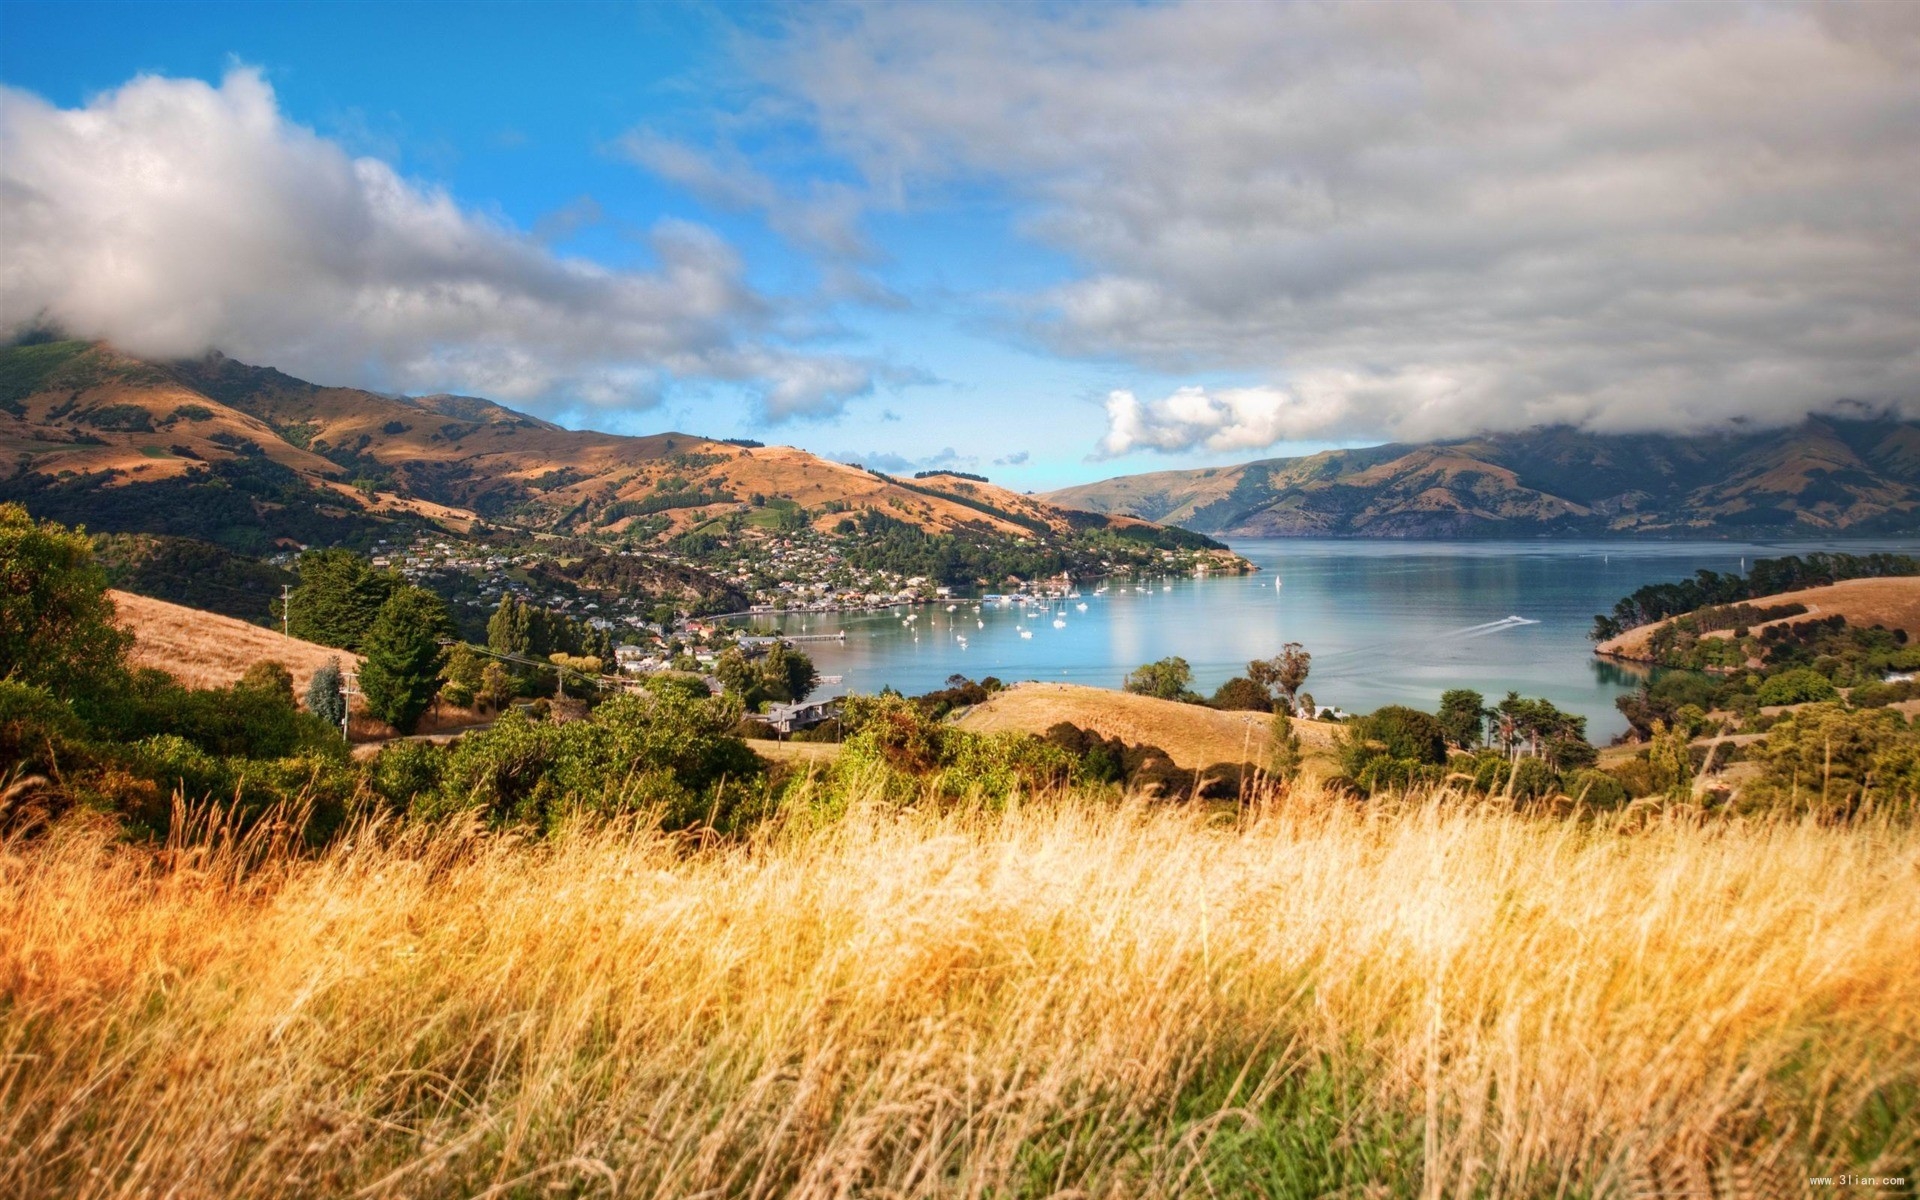 新西兰,被誉为"世界上最后一片净土"